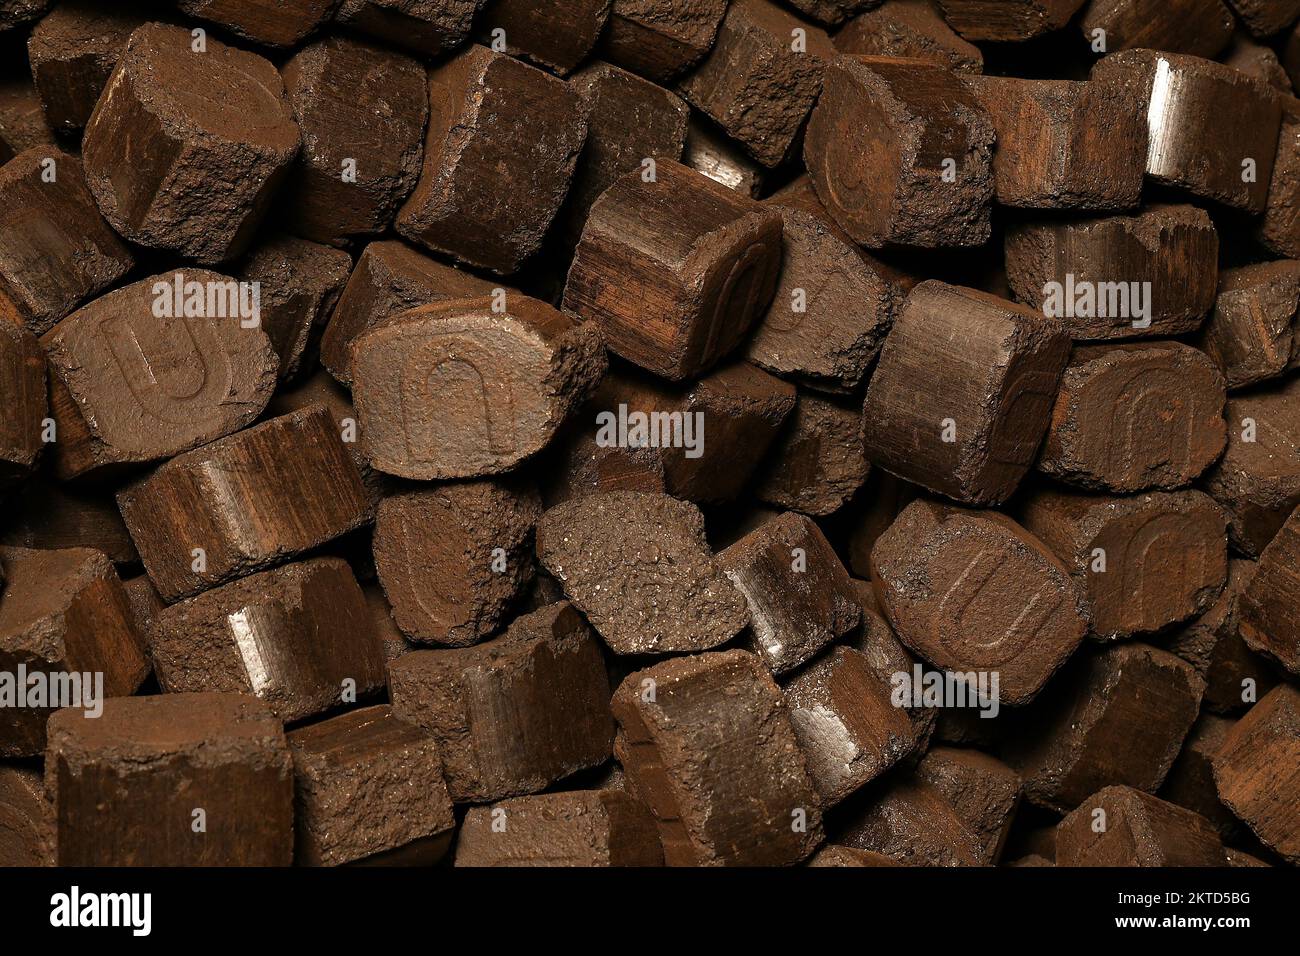 fotografías e imágenes de alta resolución - Alamy